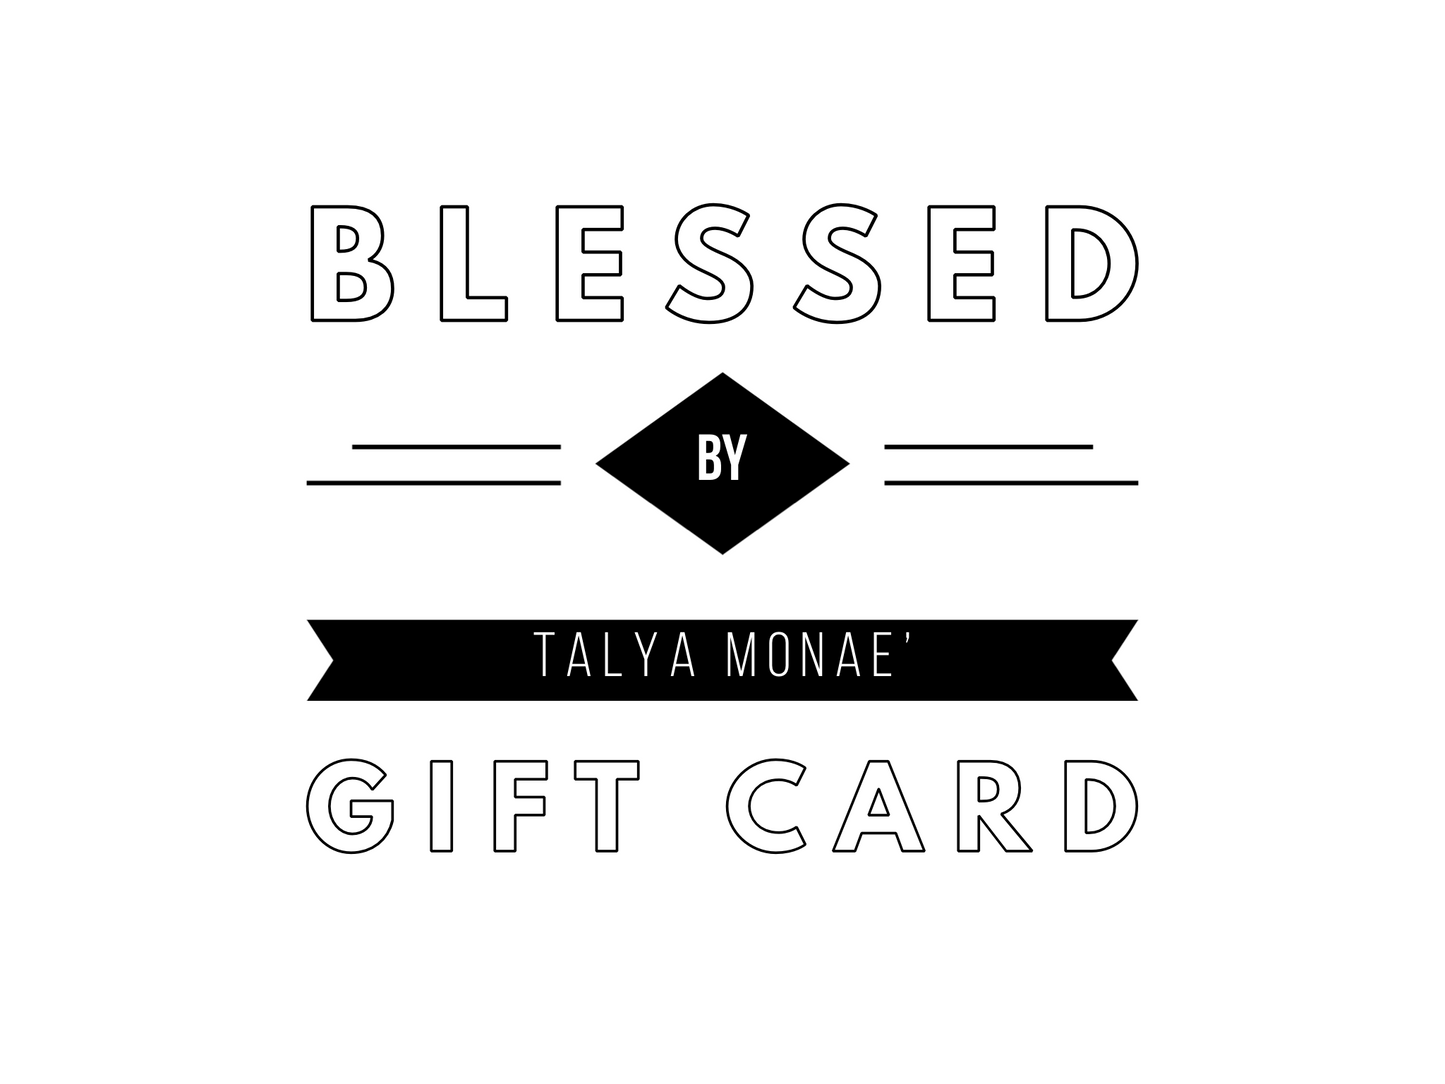 Bendecido por Talya Monae tarjeta de regalo